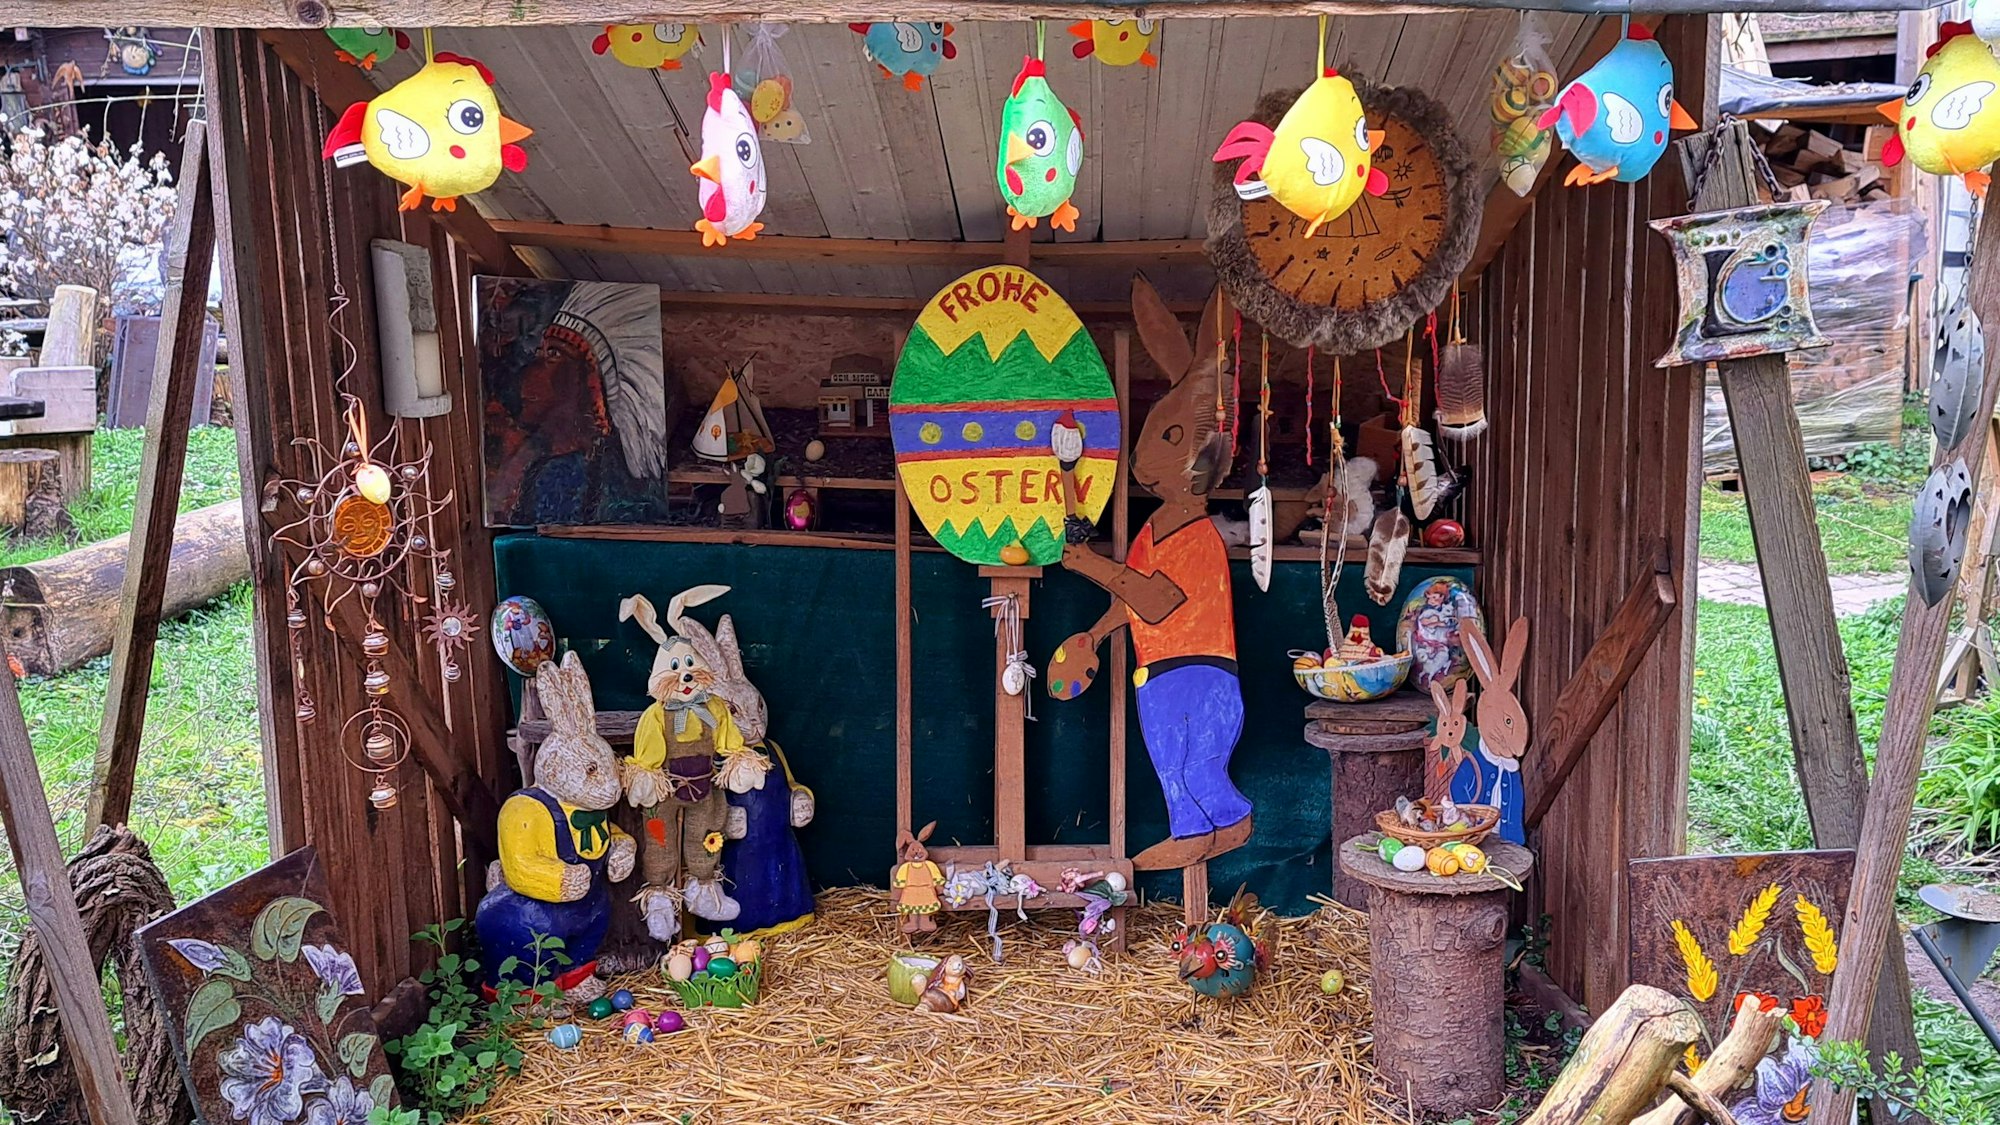 Hasenfiguren stehen in einem Unterstand, auf einem großen bunten Osterei steht „Frohe Ostern“.